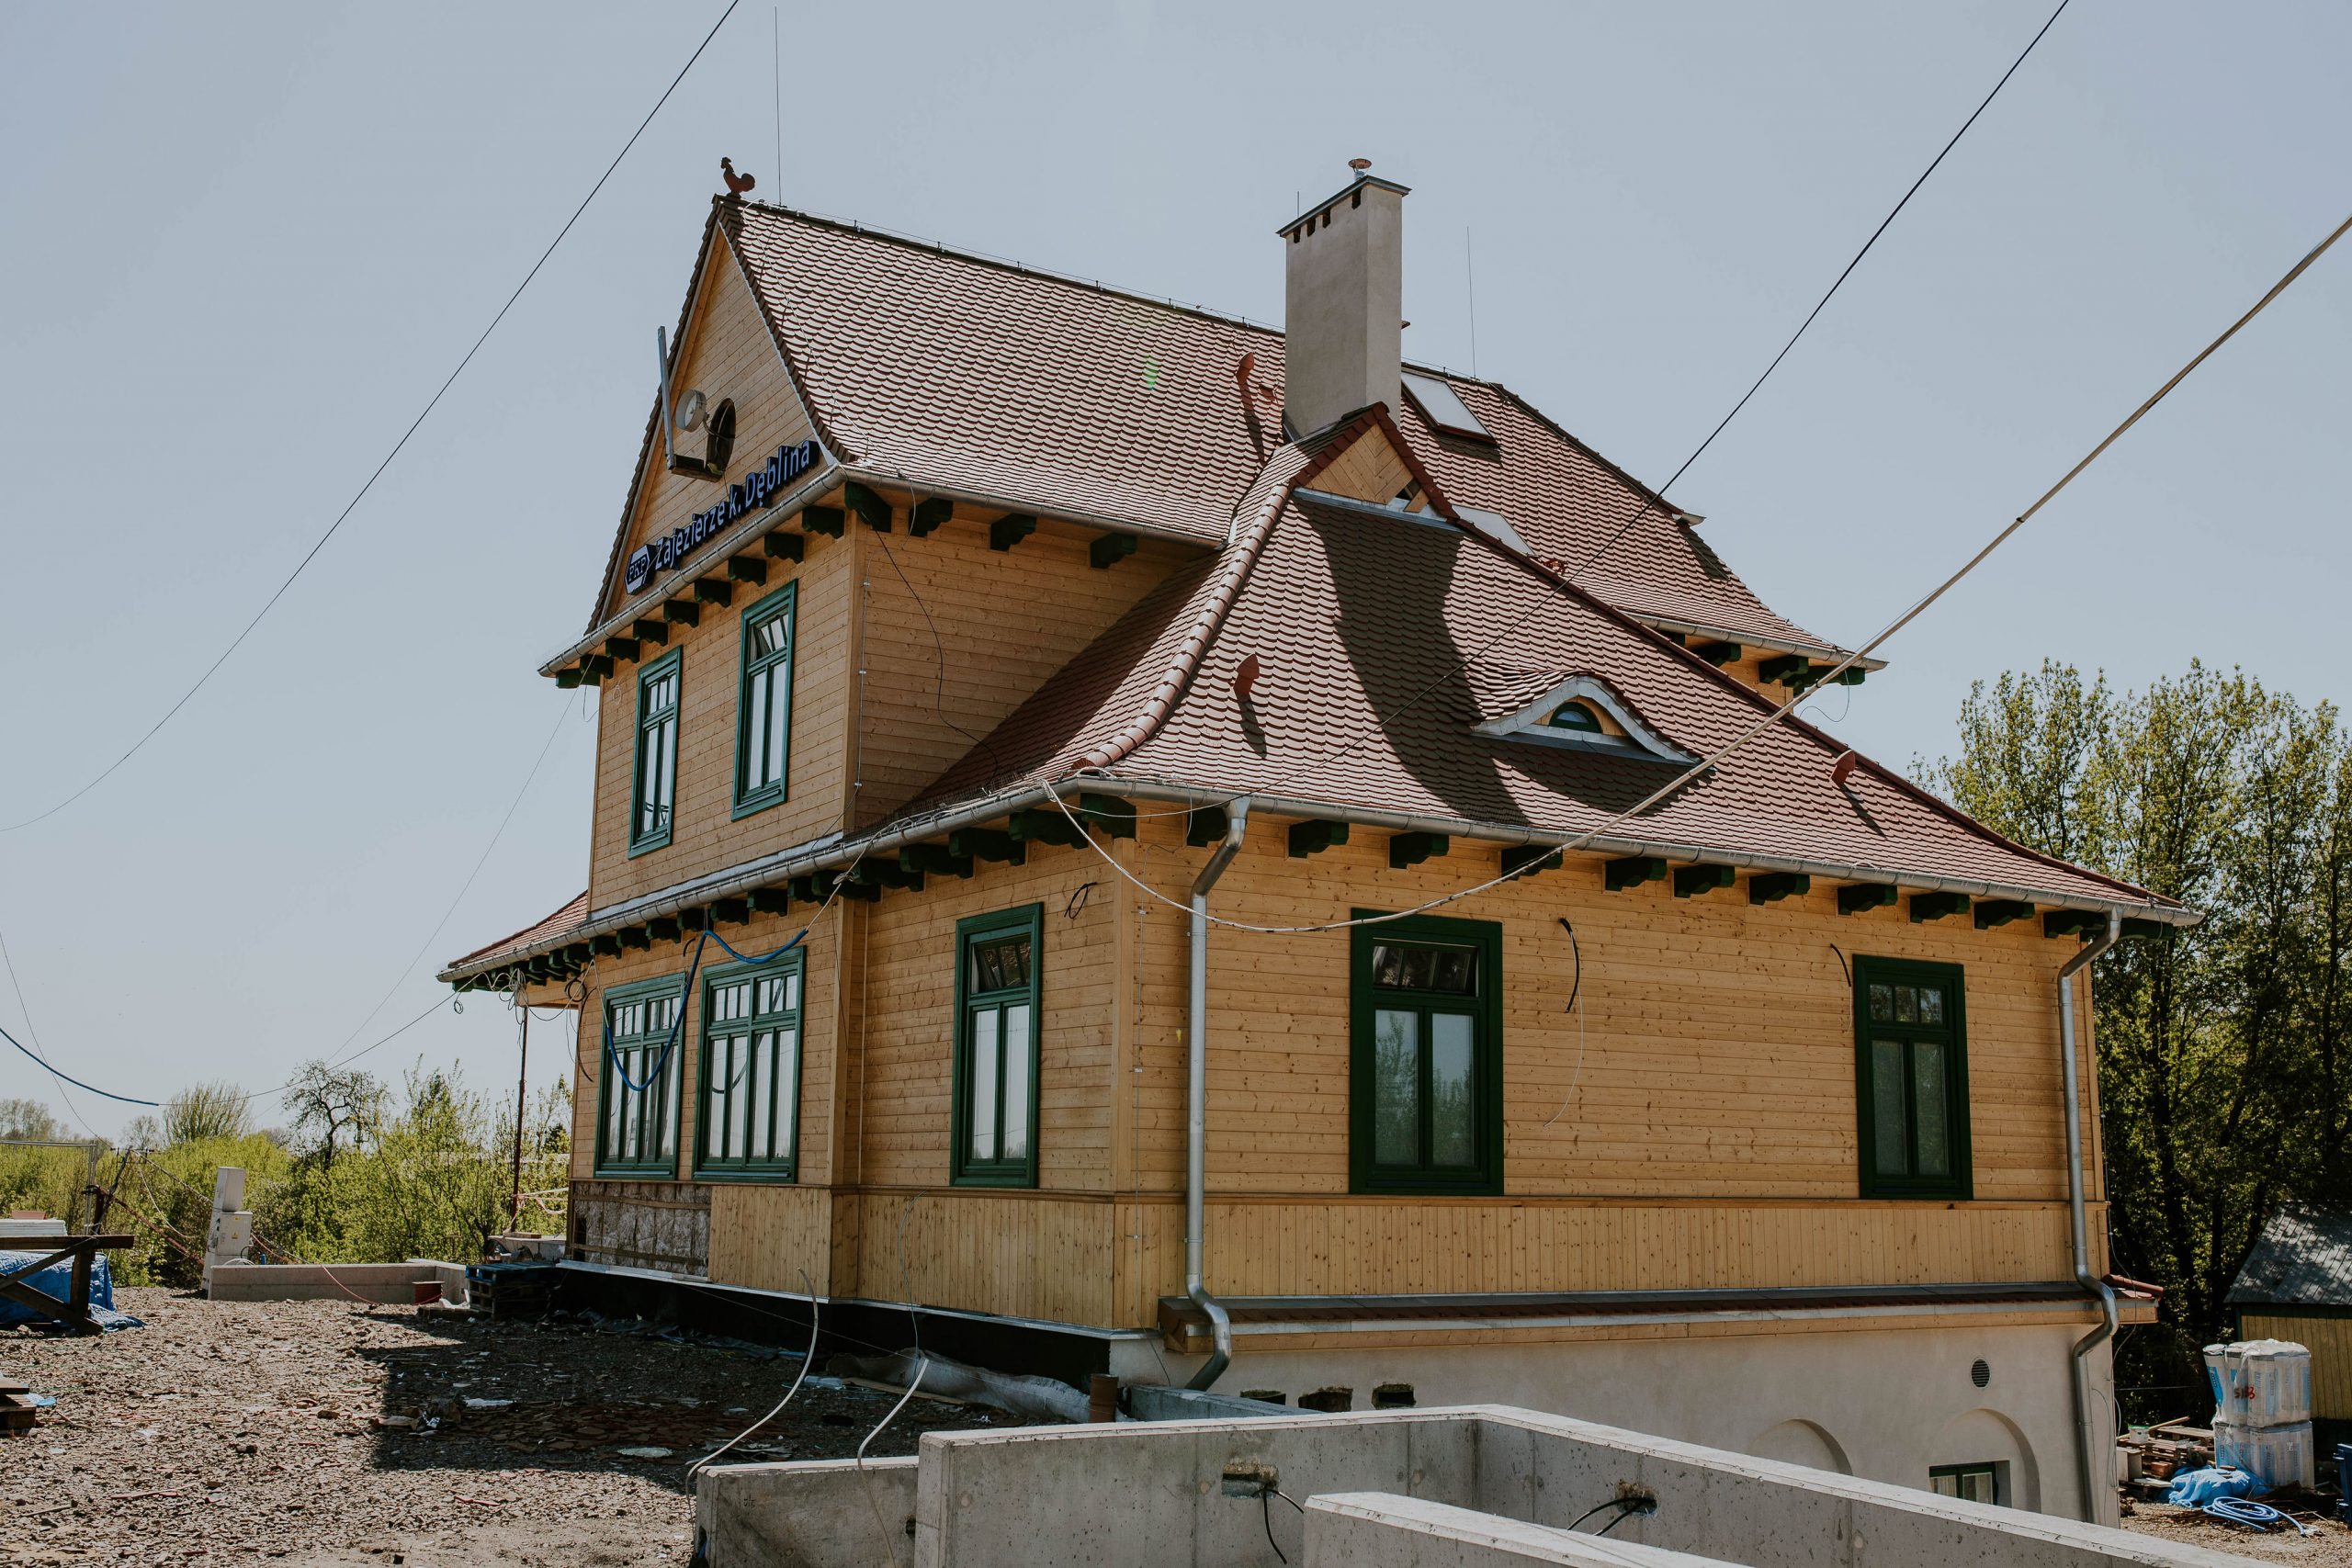 Dworzec PKP Zajezierze